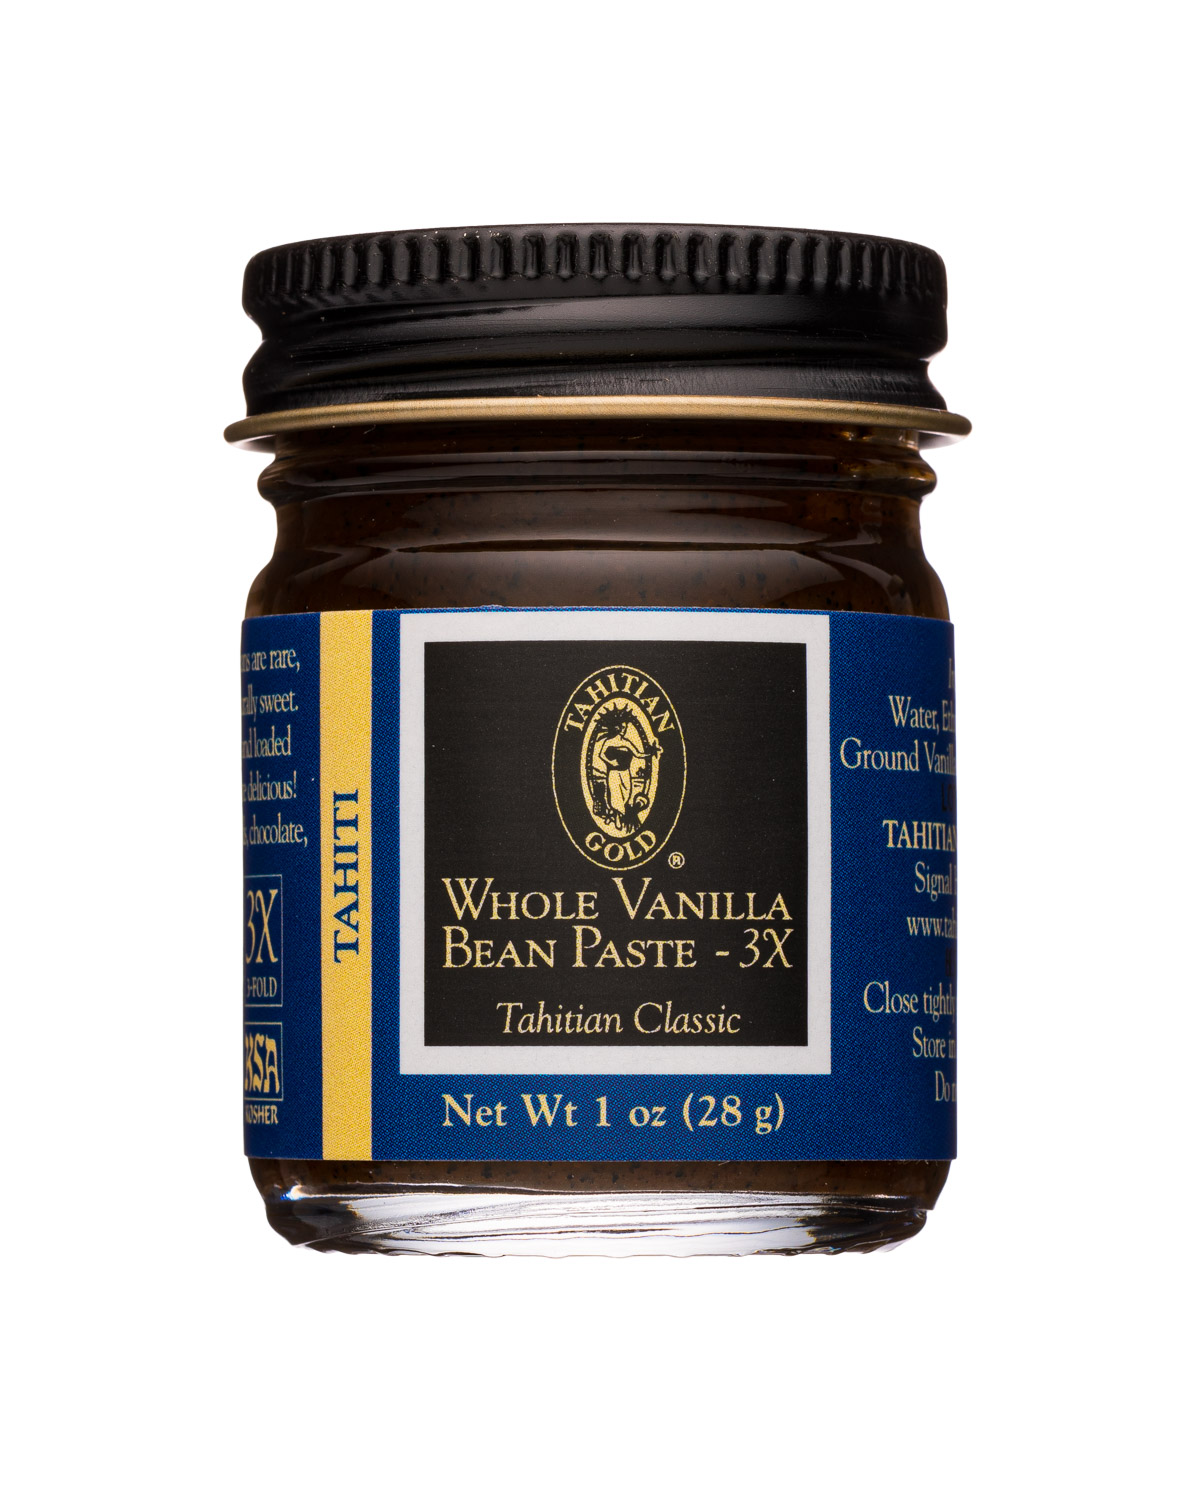 Whole Vanilla Bean Paste 3X- Tahitian Classic (Tahiti)